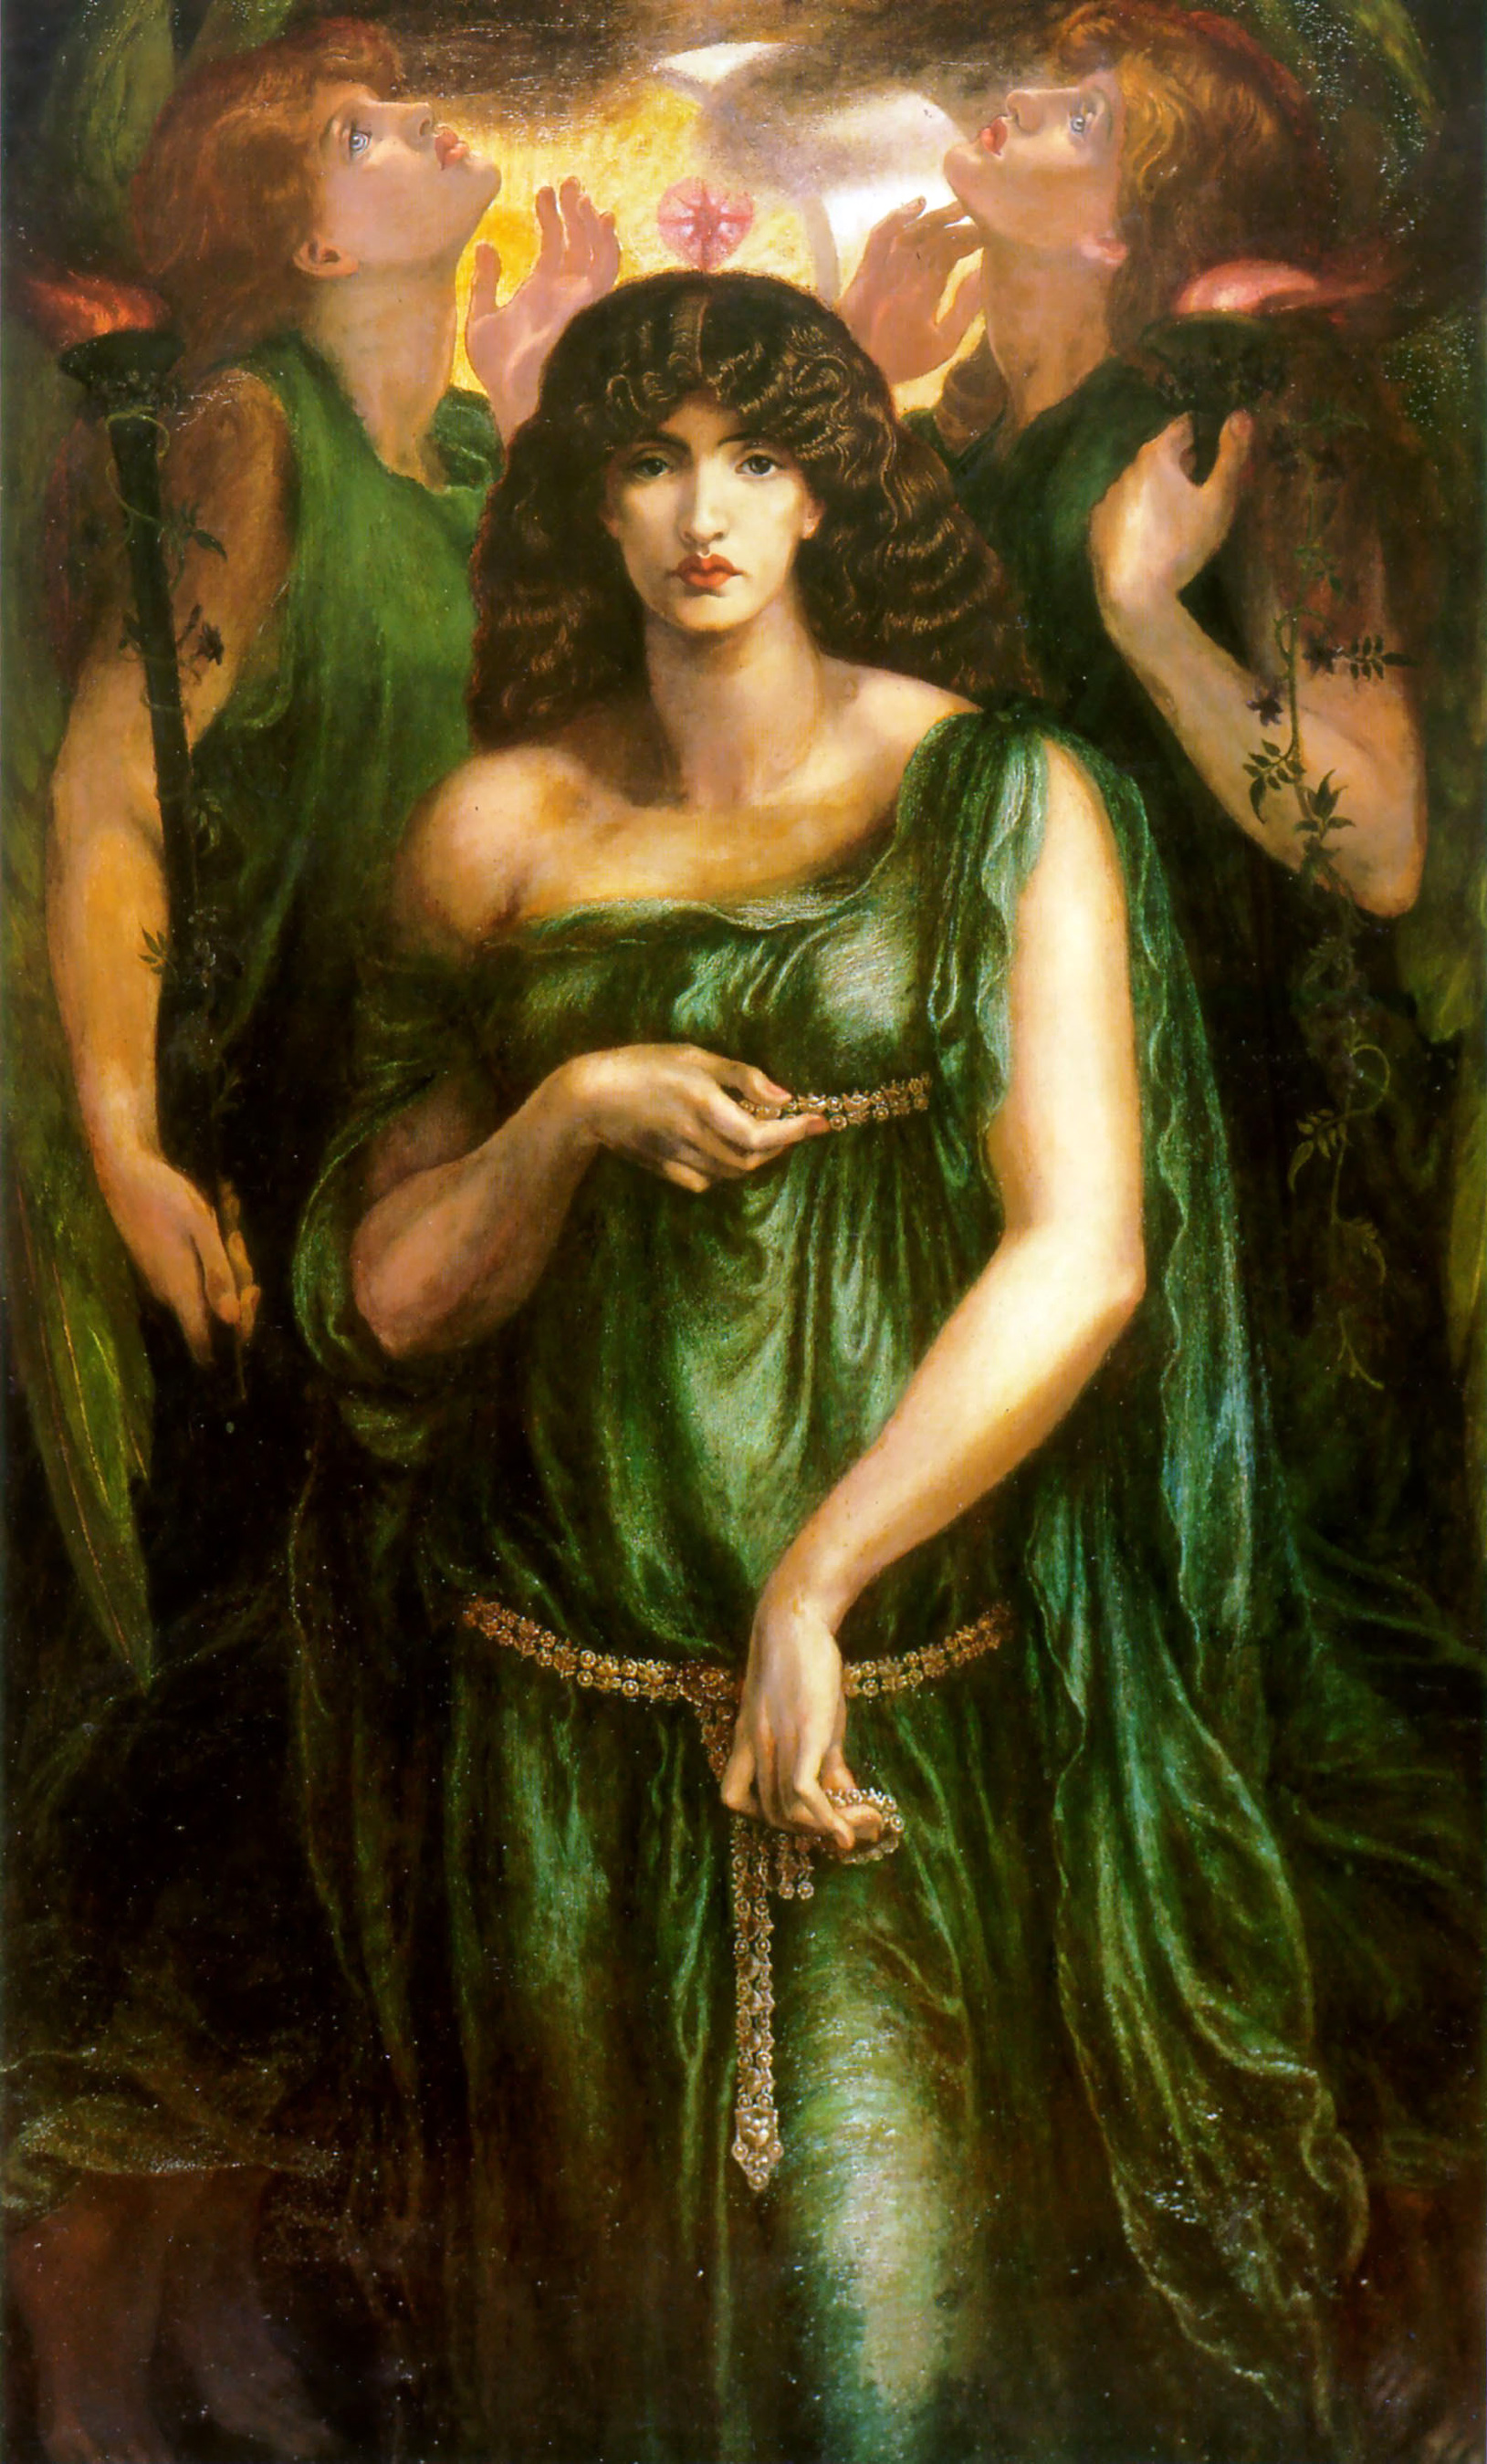 Astarte Syriaca by Dante Gabriel Rossetti - 1877 - 185 x 109 cm 